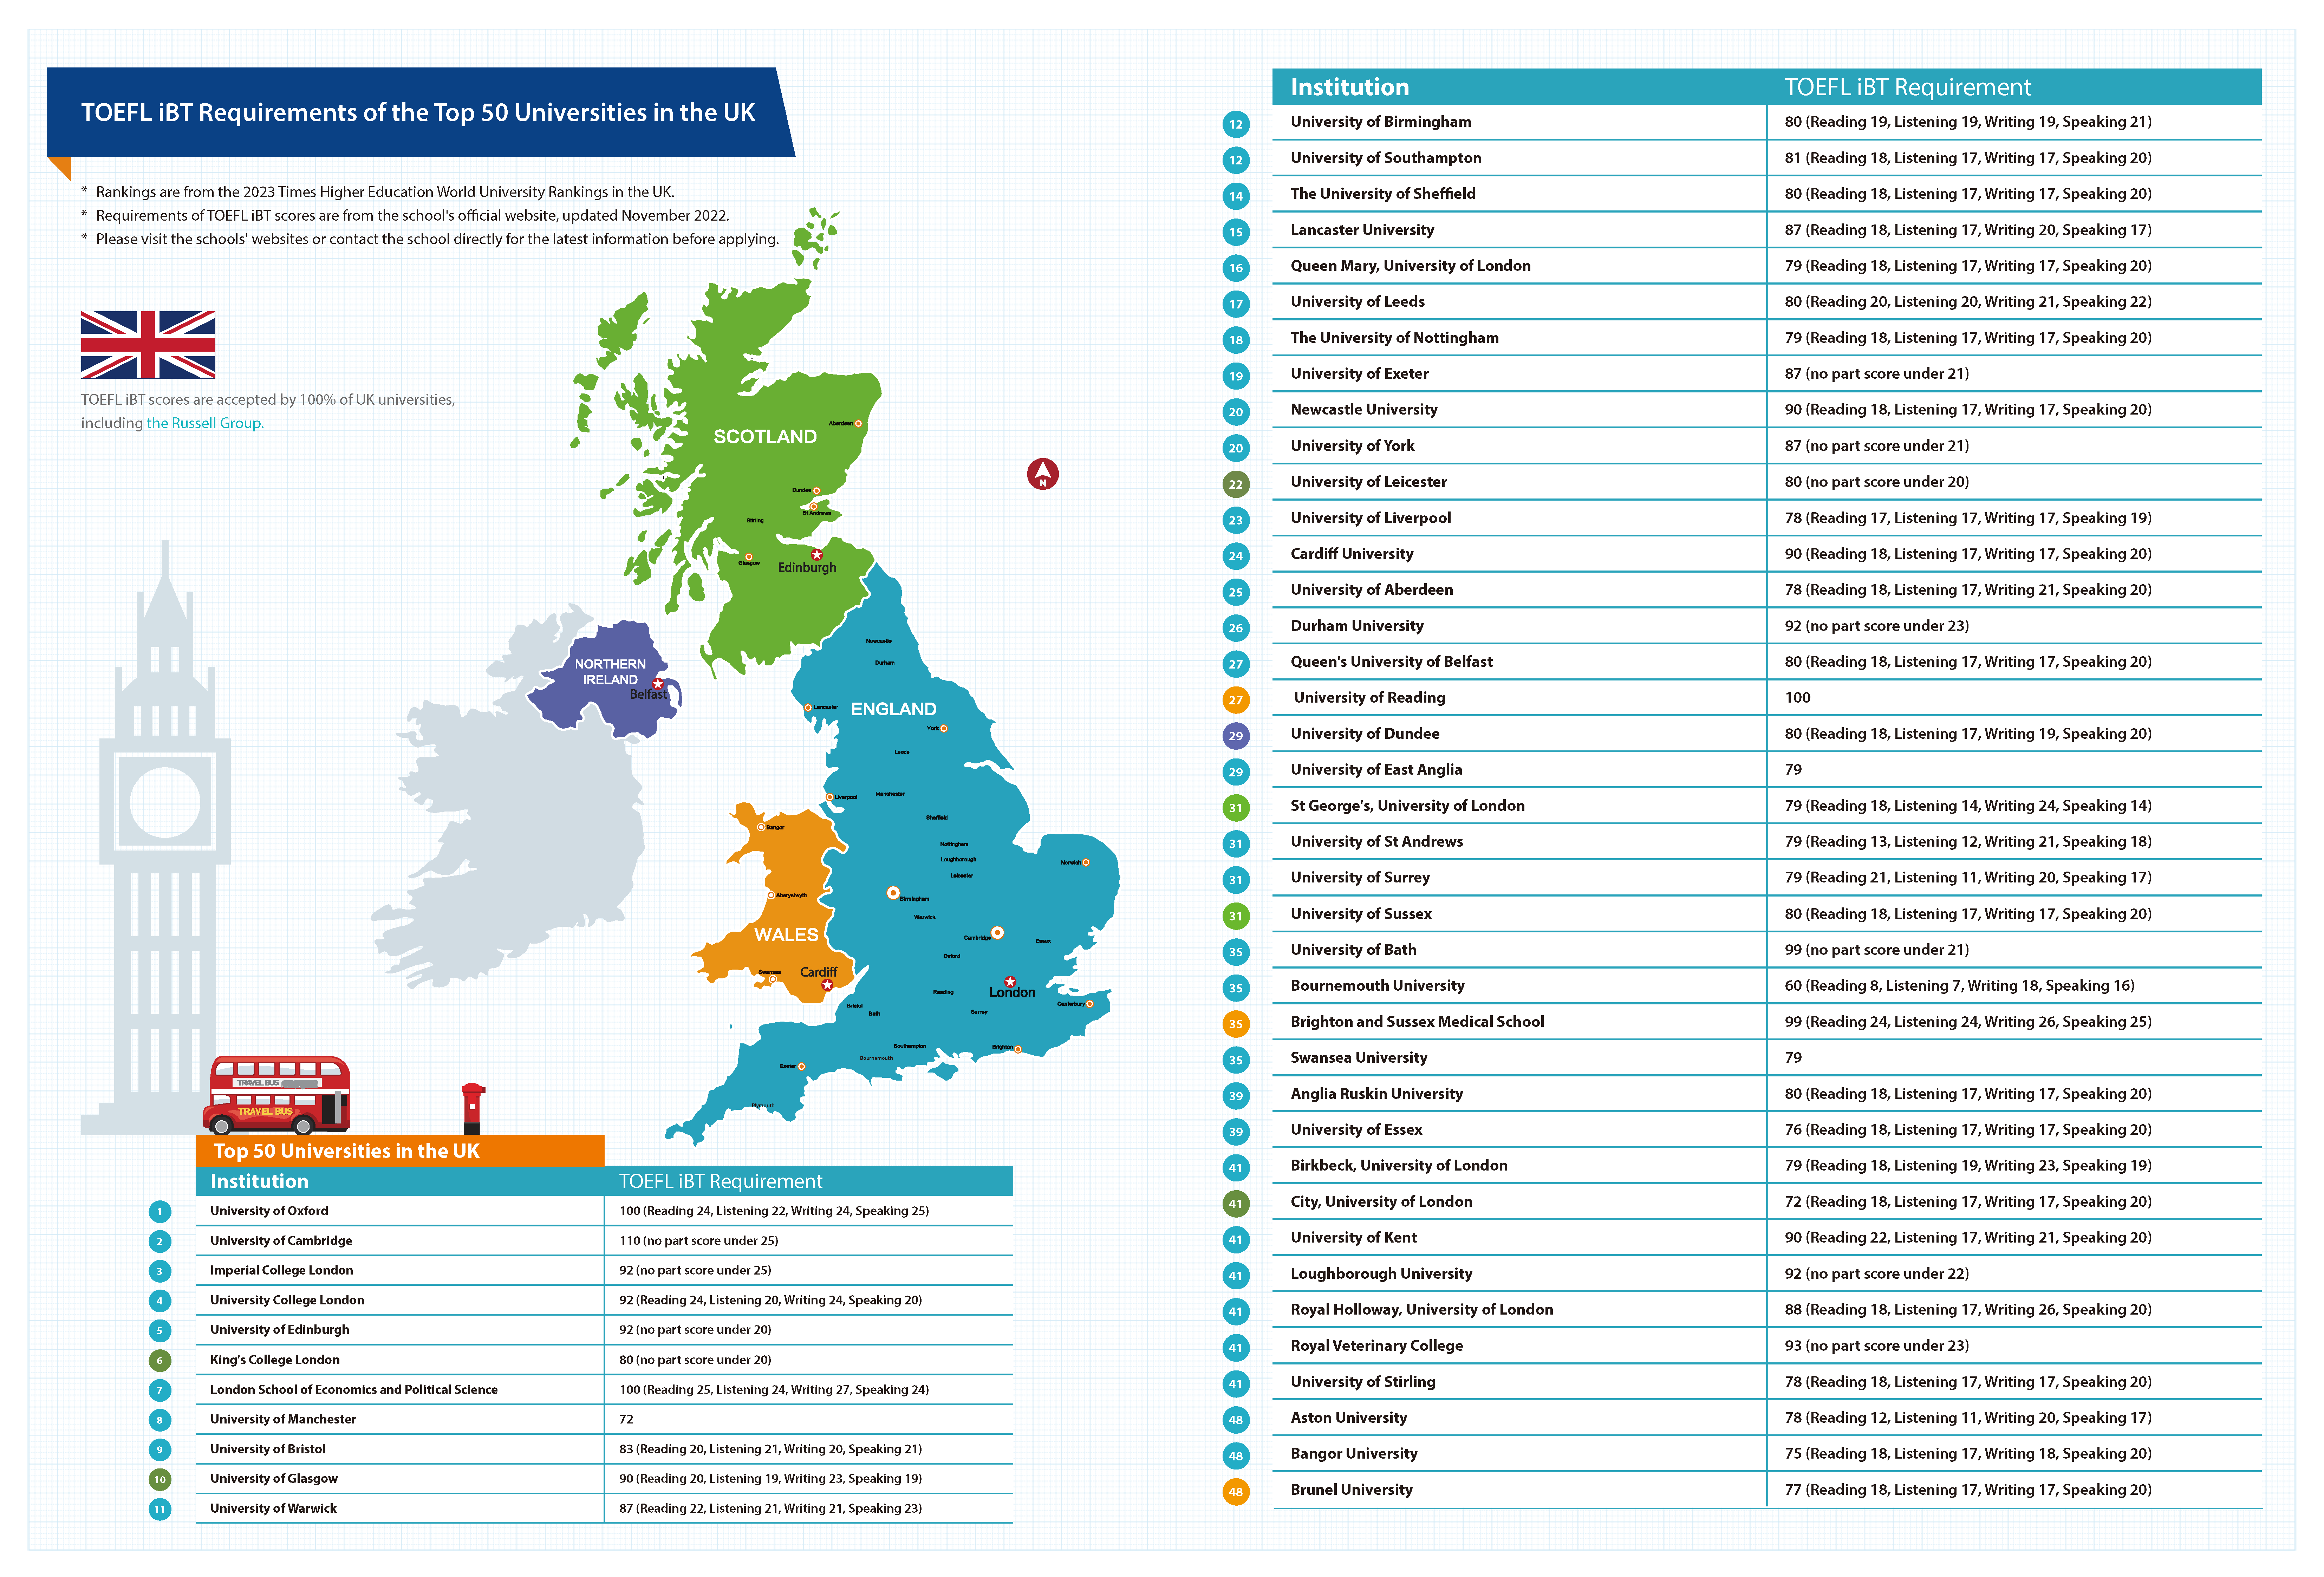 TOEFL iBT Requirements of the Top 50 Universities in the UK